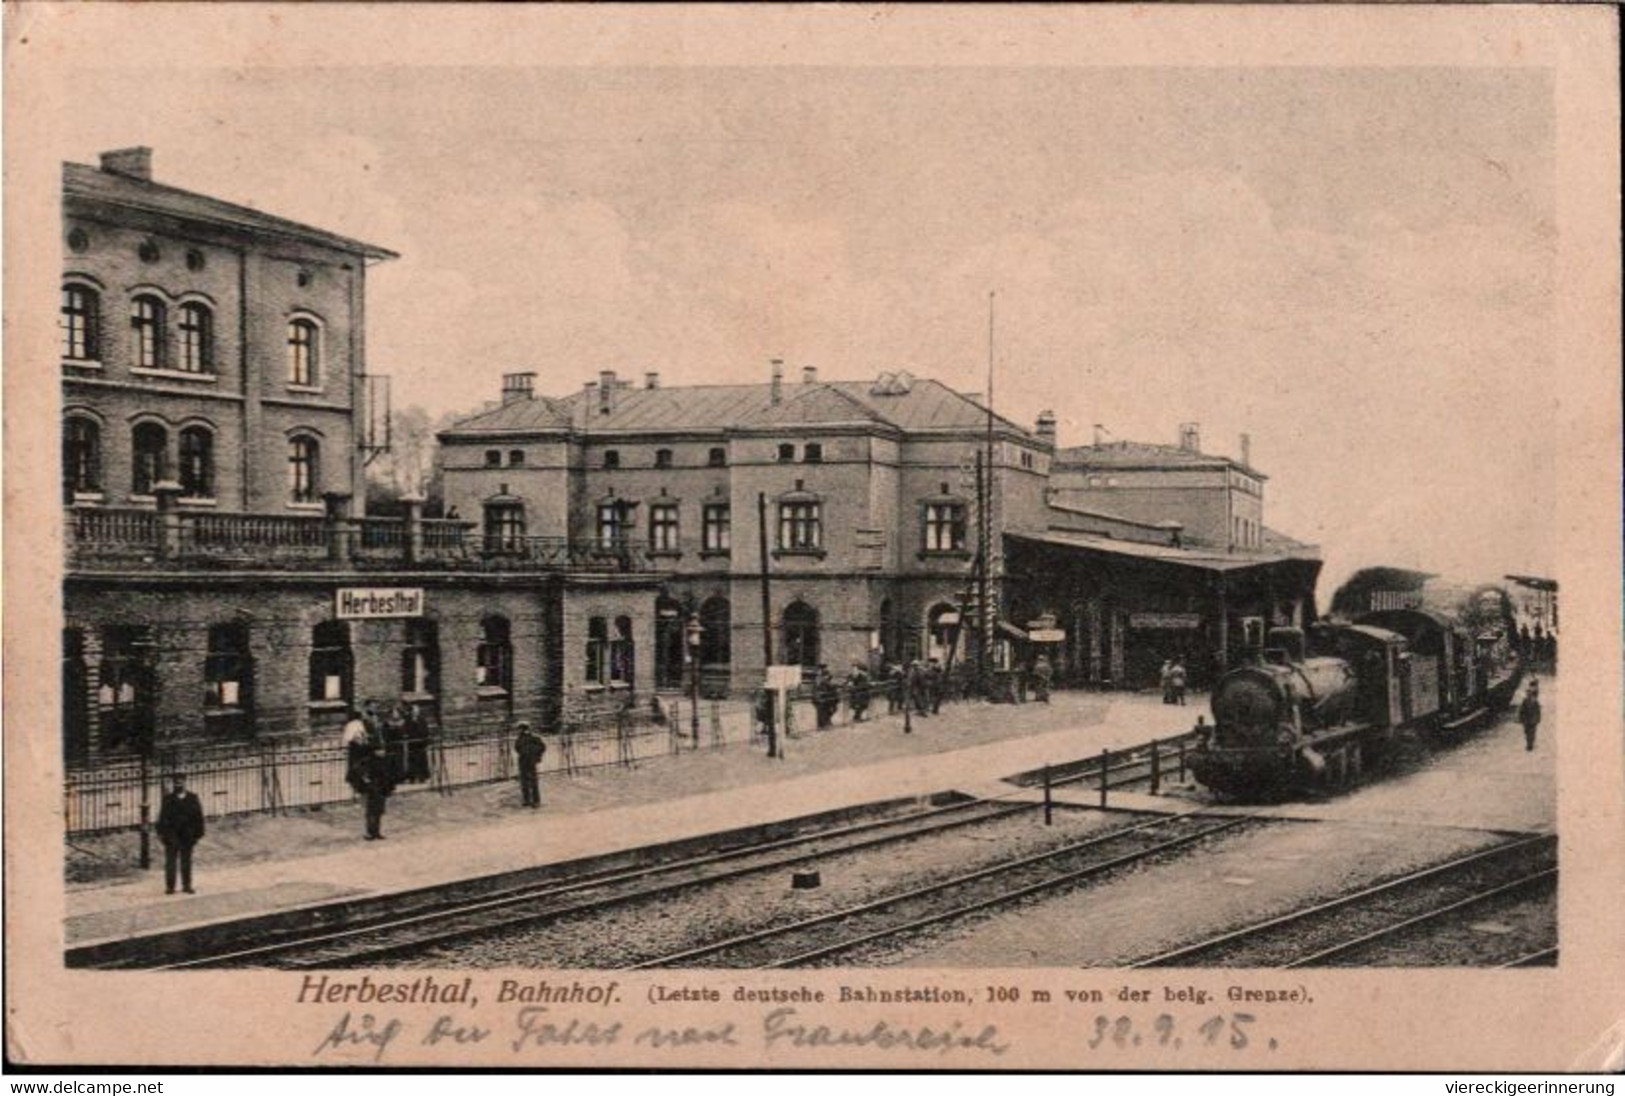 !  Ansichtskarte Herbesthal, Bahnhof Gare Grenze, Dampflok, Eisenbahn, Feldpost 1915, Postkontrolle Stempel Eupen, Greiz - Gares - Avec Trains